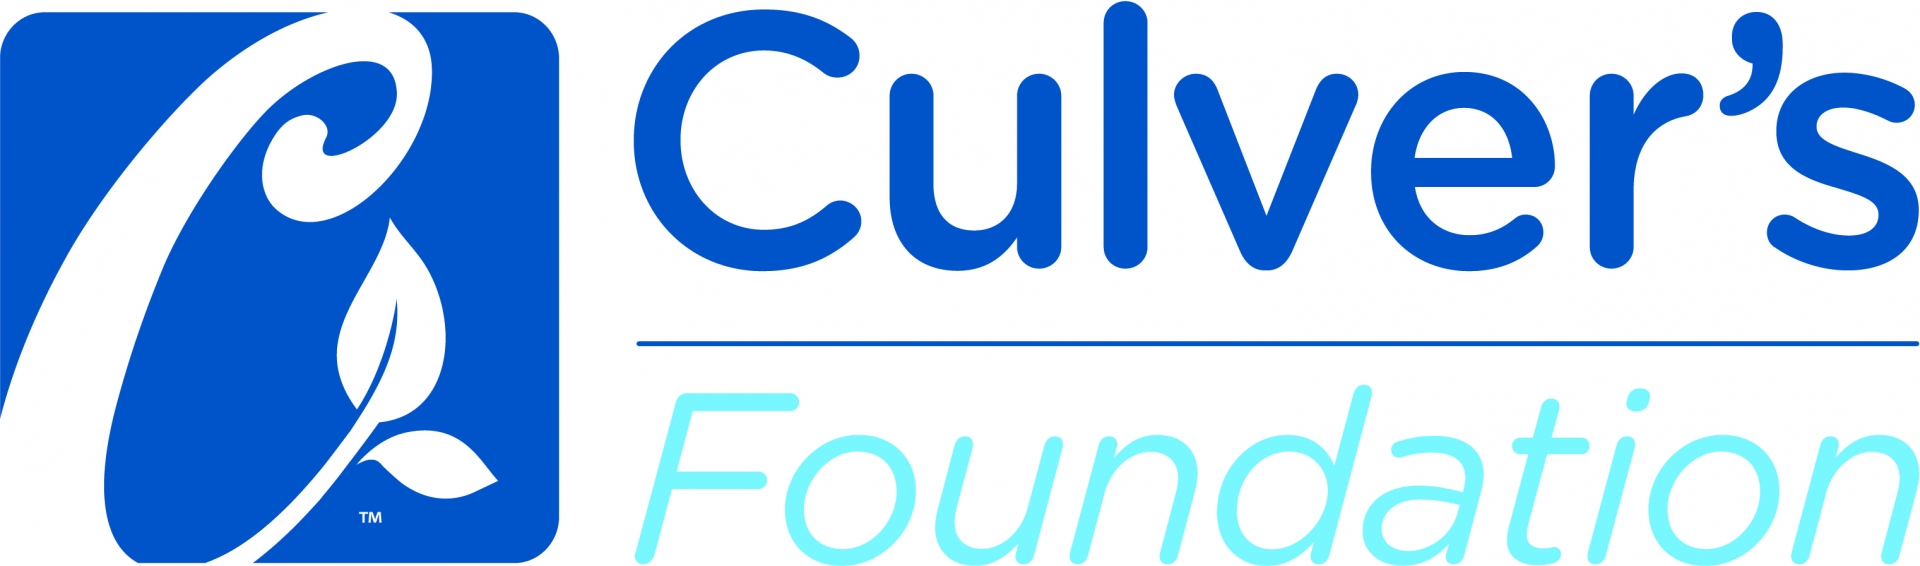 Culver's Foundation